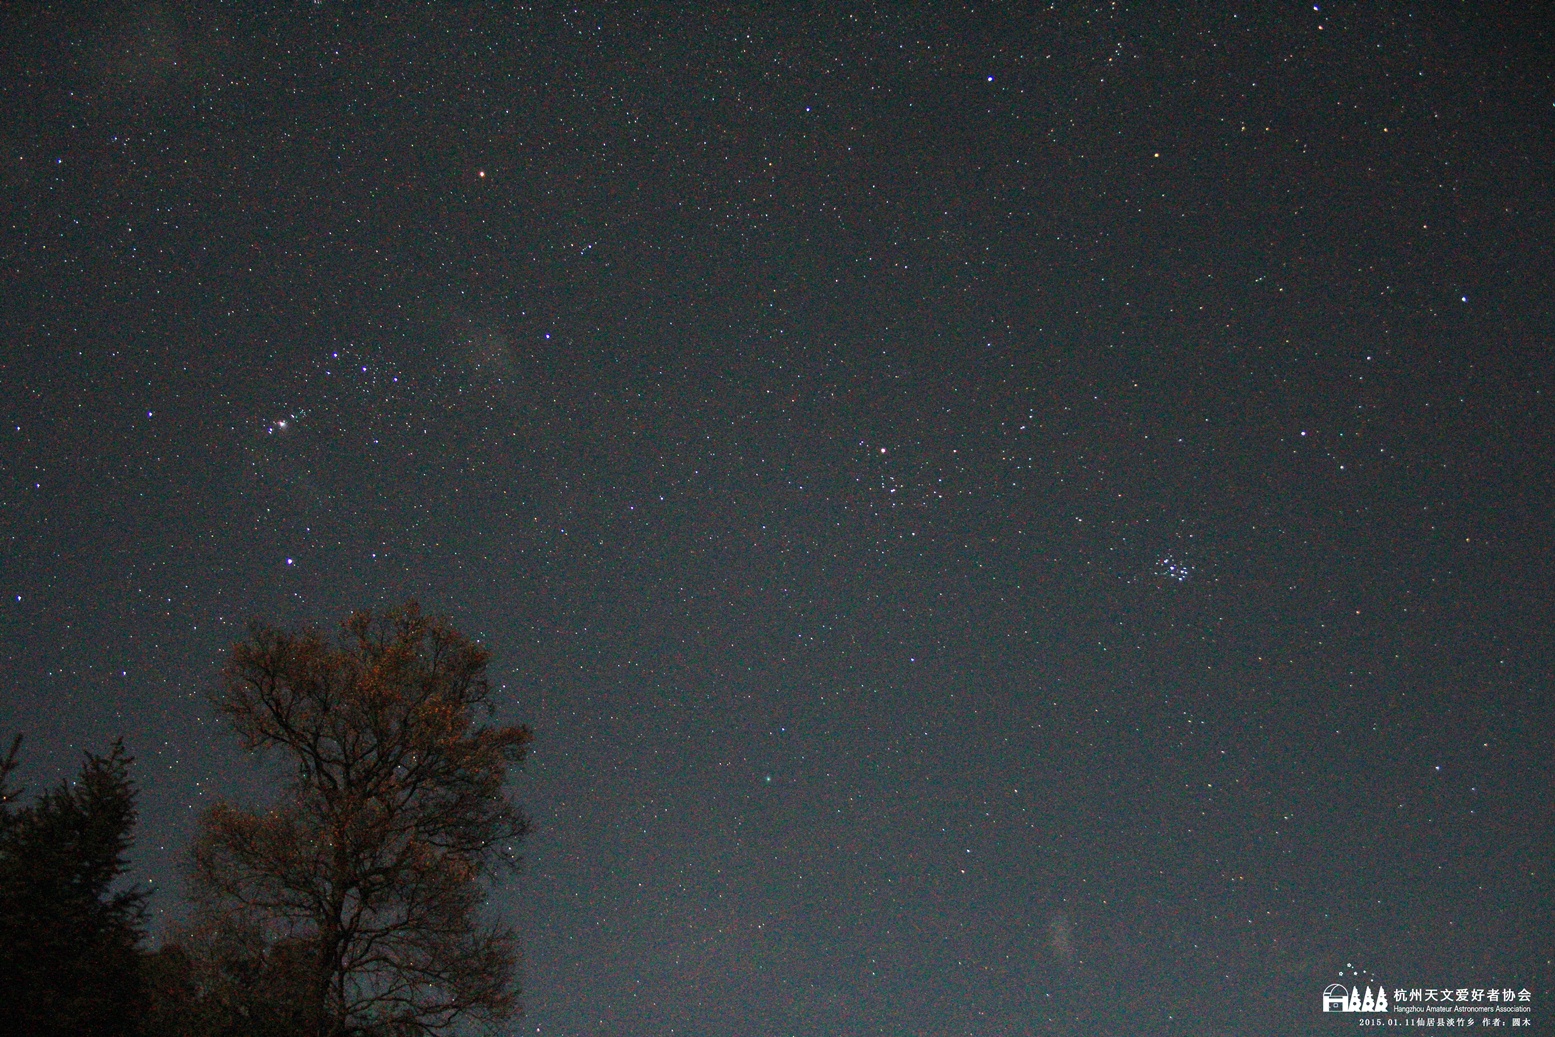 1 大树与猎户座(左上角)，七姐妹星团(右)，lovejoy彗星(中间偏下但绿色).JPG.jpg